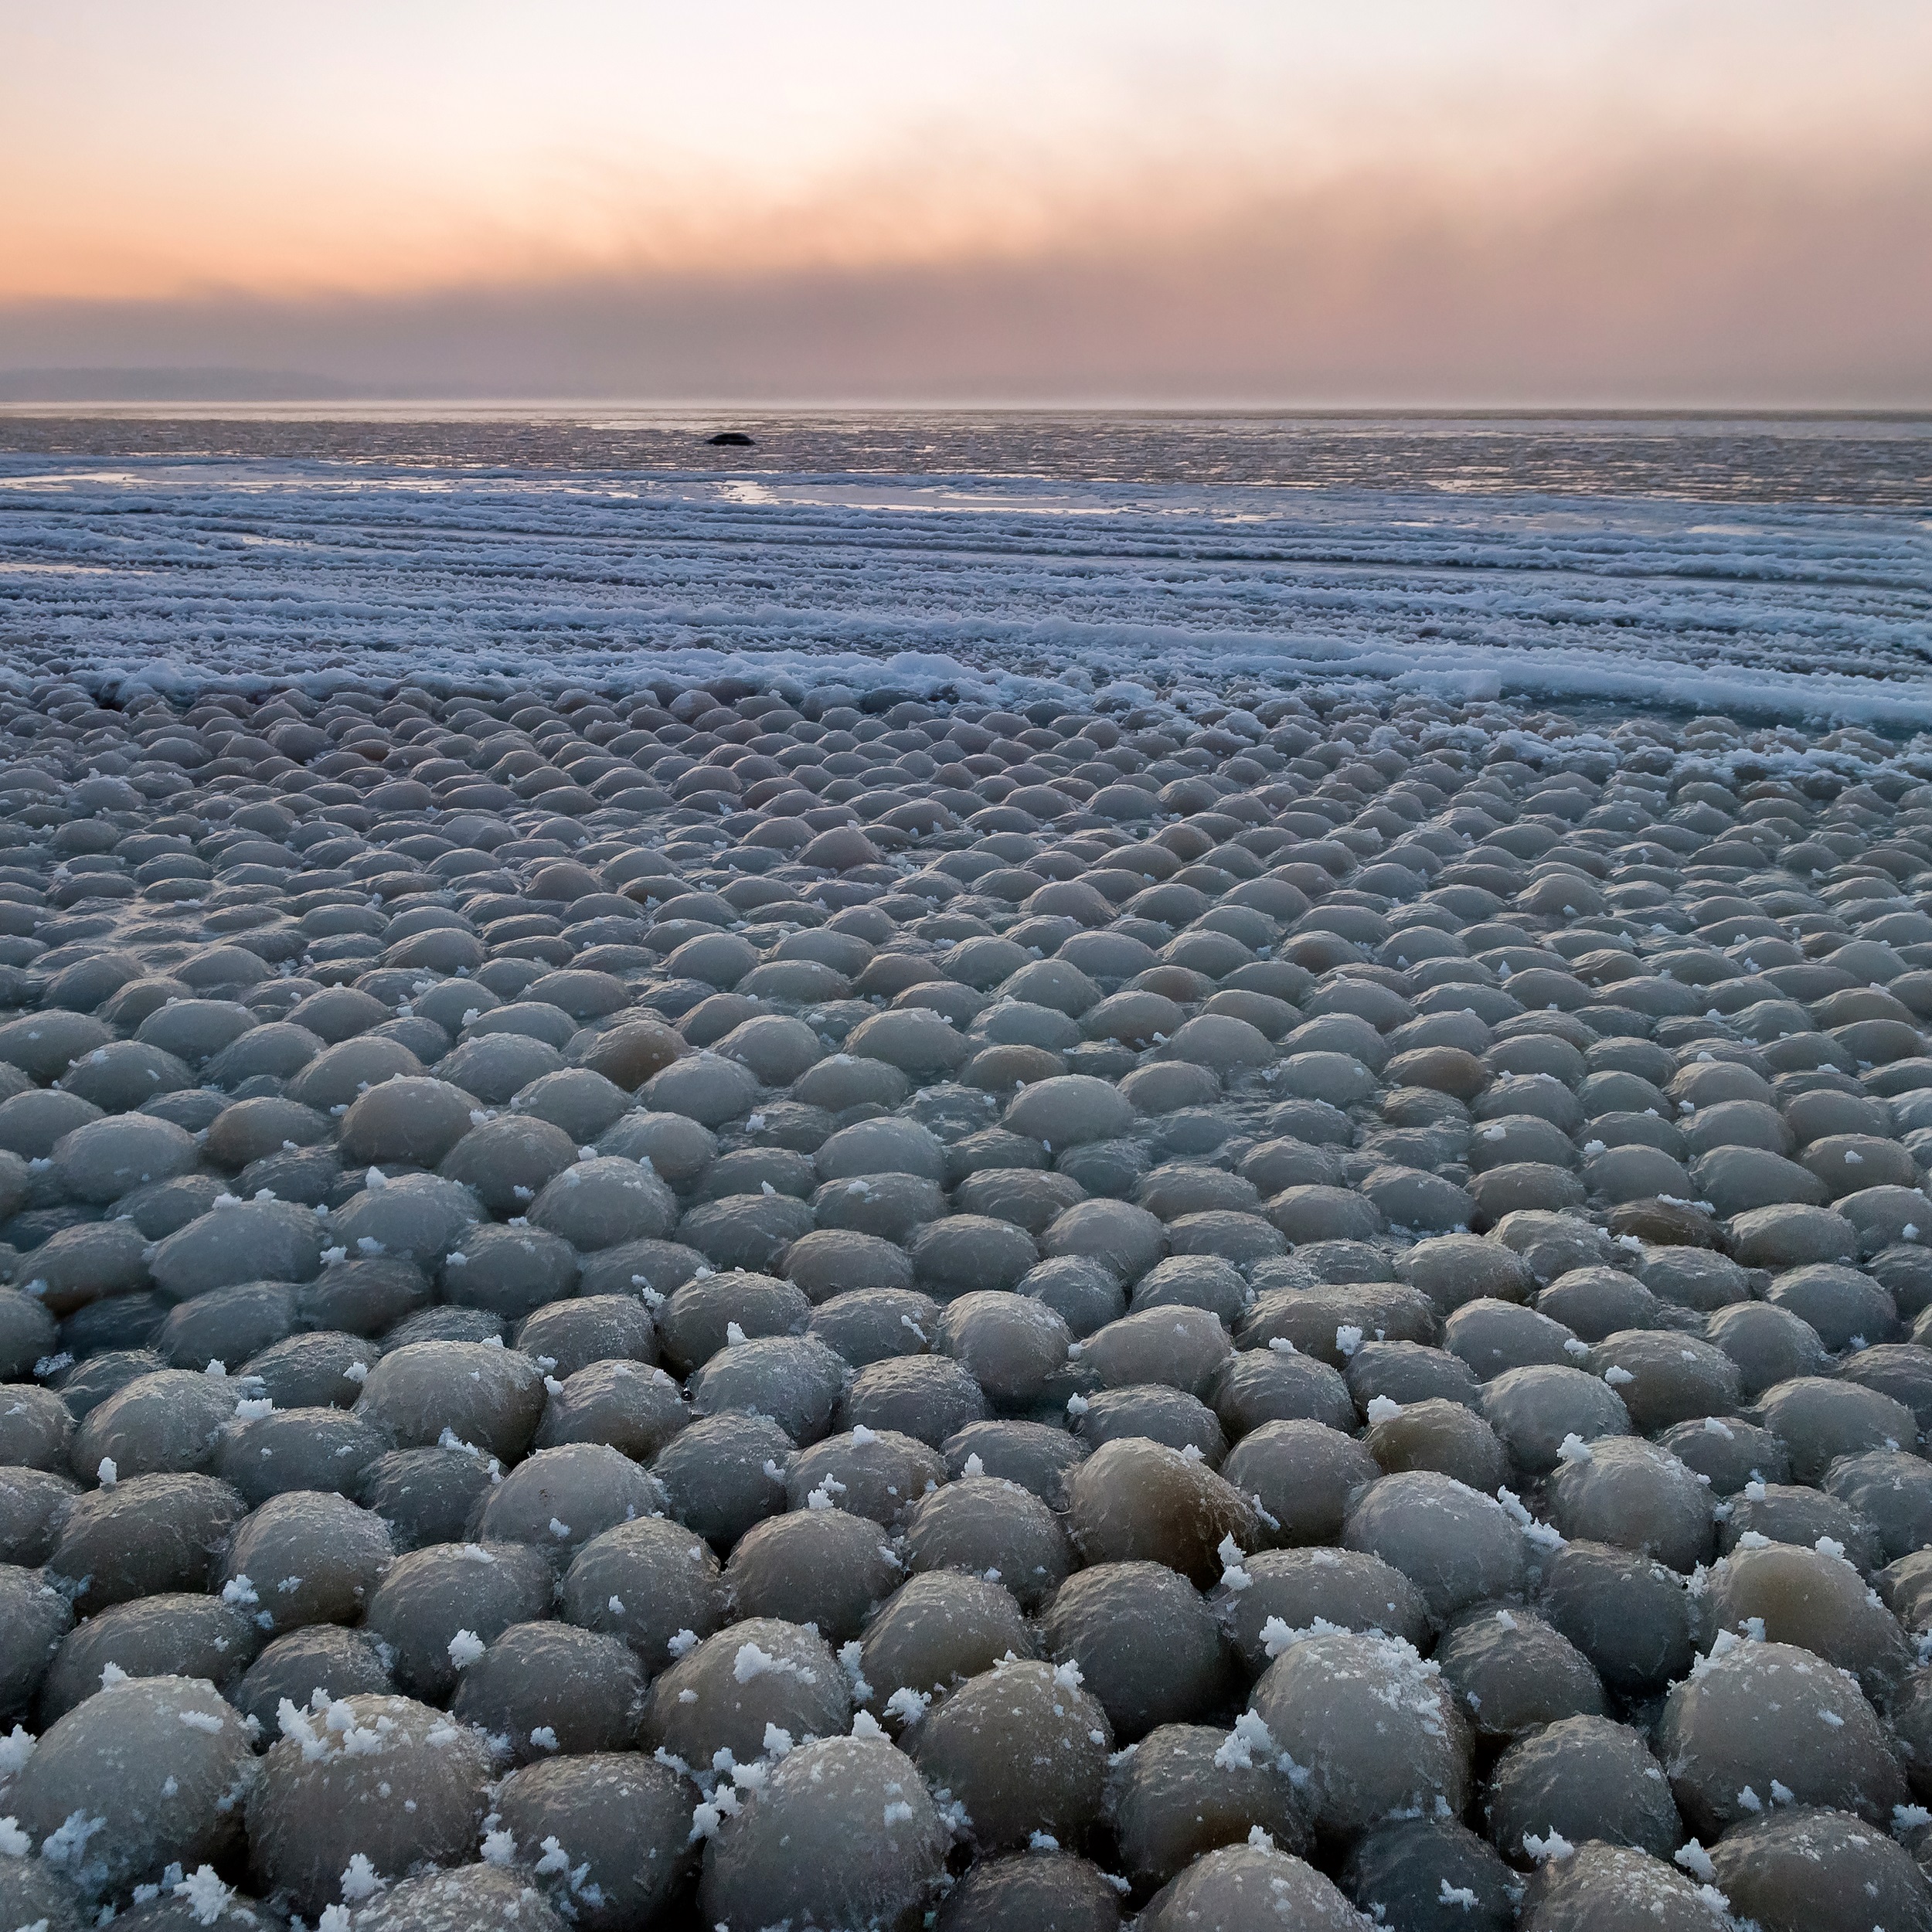 Des boules de glace d'une dizaine de centimètres observées en Estonie en 2014. © Aleksandr Abrosimov, Wikimedia Media, CC by-sa 4.0